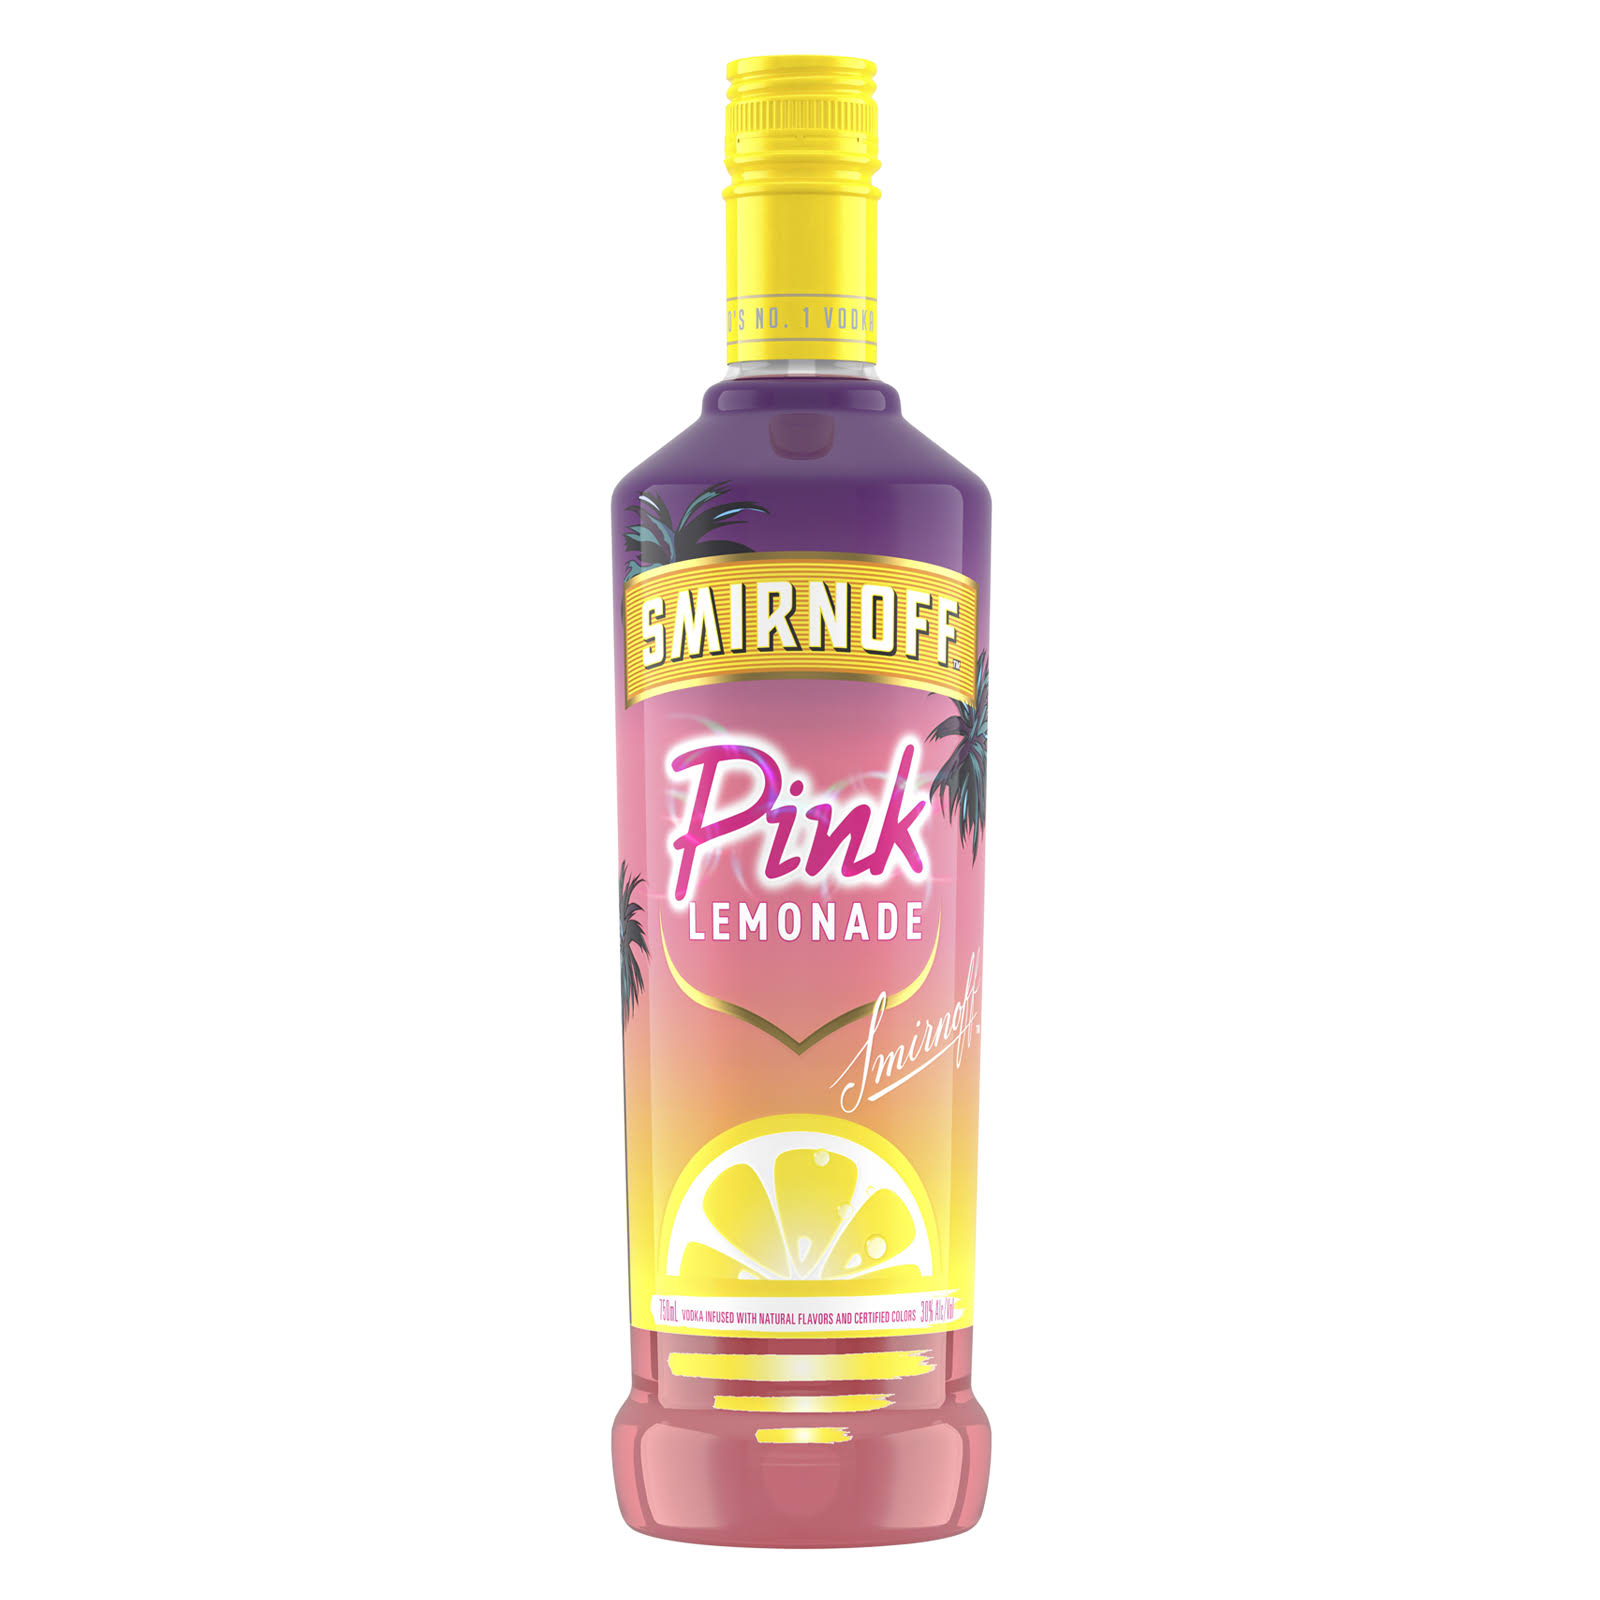 Smirnoff Pink Lemonade Vodka 750ml (60 Proof)